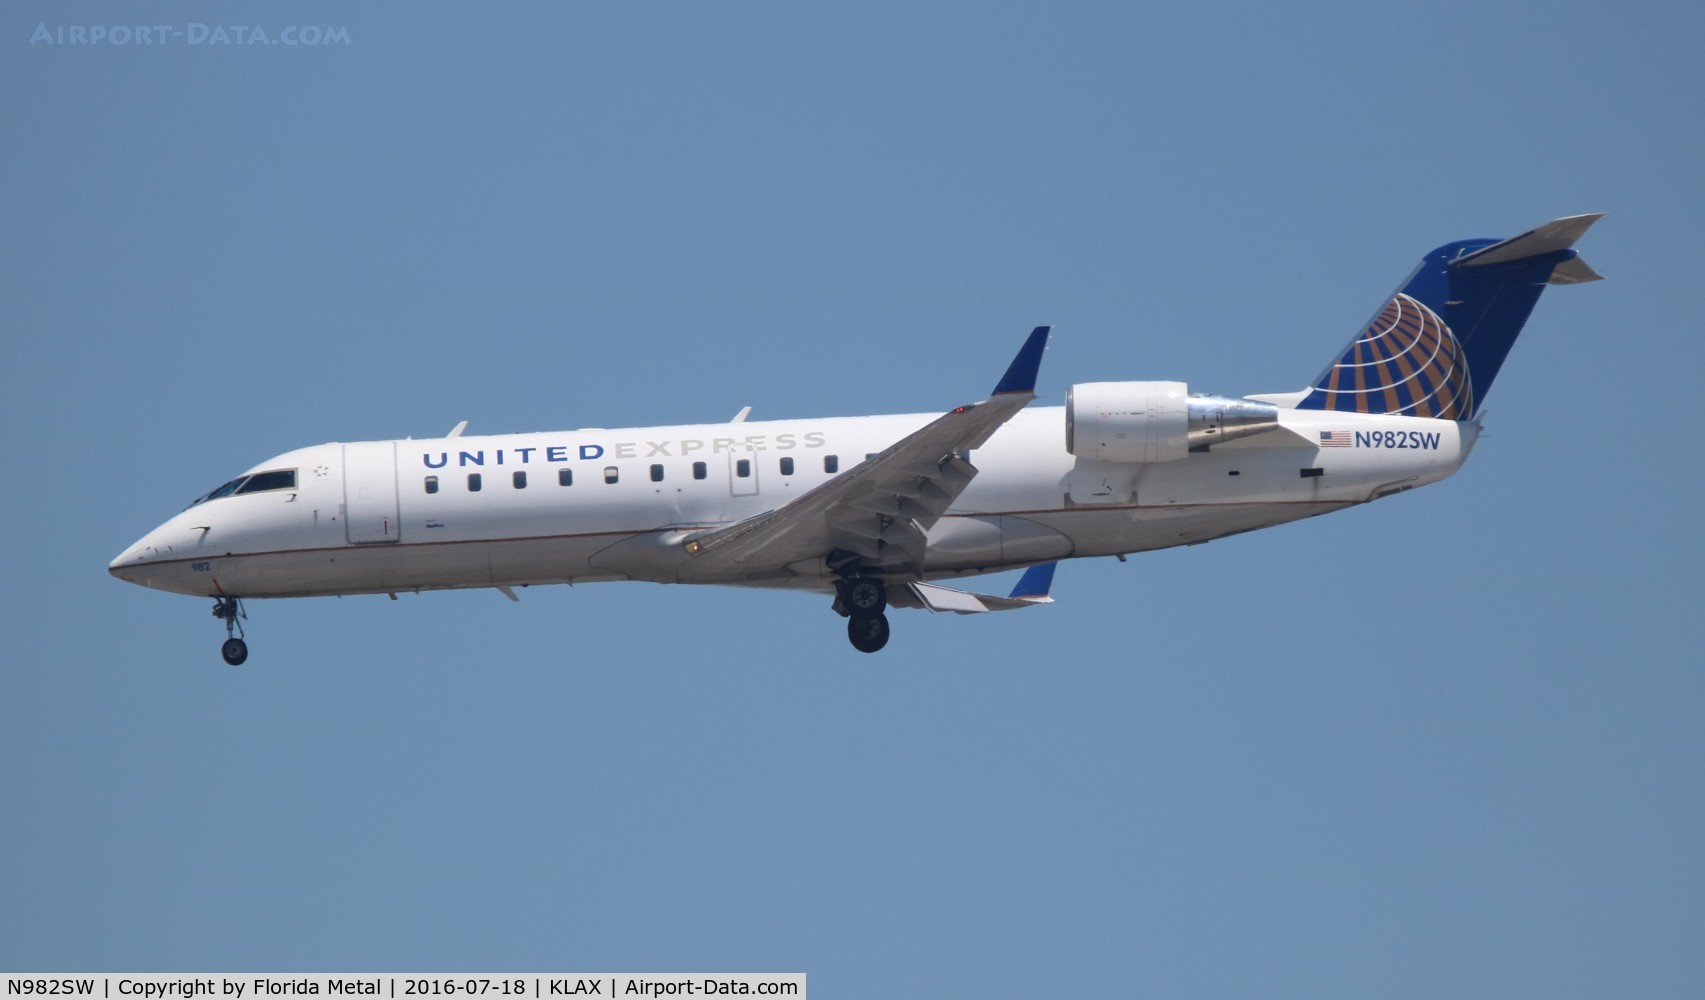 N982SW, 2004 Bombardier CRJ-200 (CL-600-2B19) C/N 7956, United Express